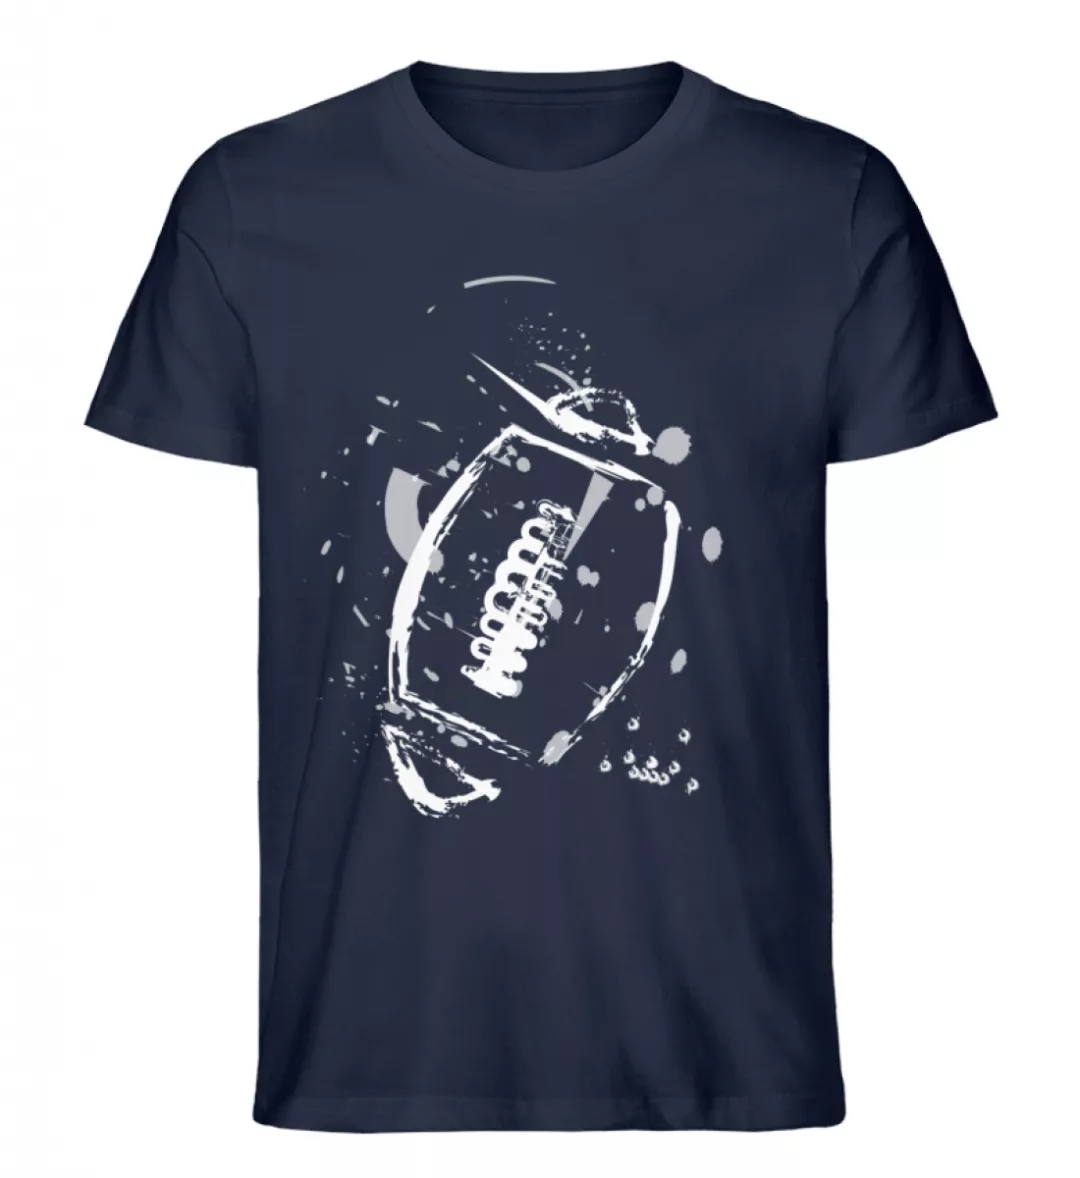 New Legacy Football Shirt - Herren Premium Organic Shirt-6959